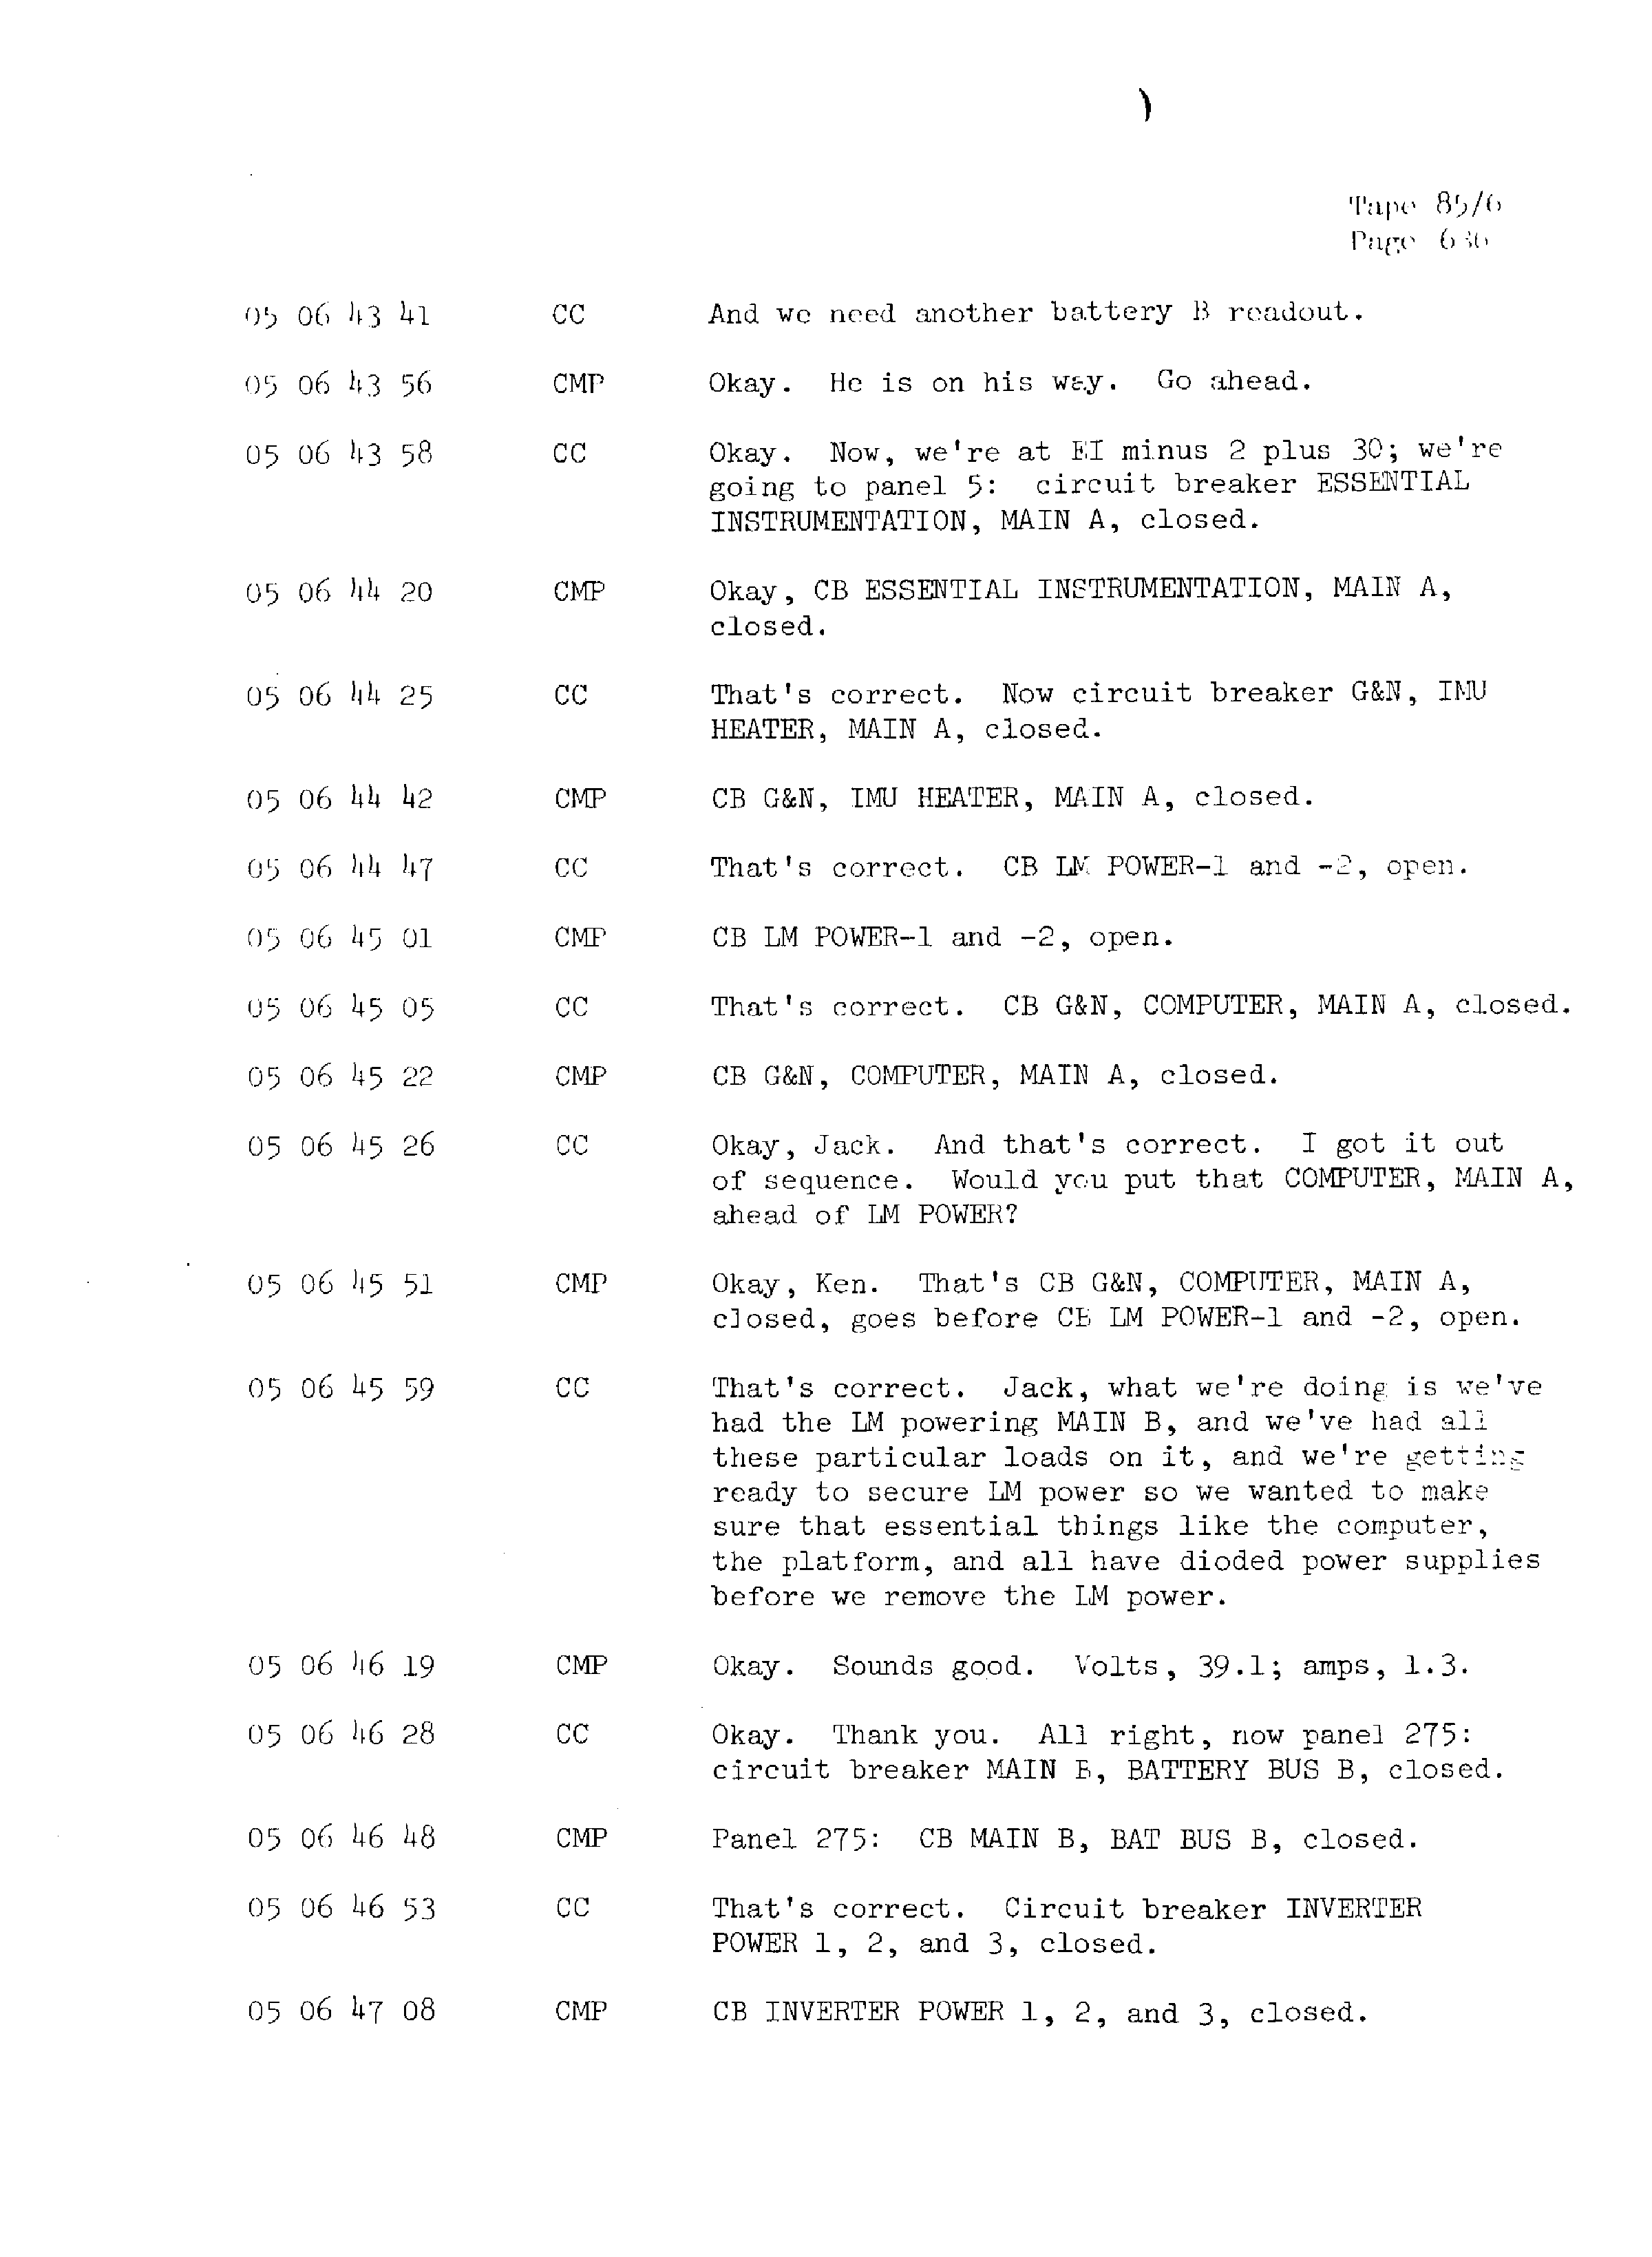 Page 643 of Apollo 13’s original transcript